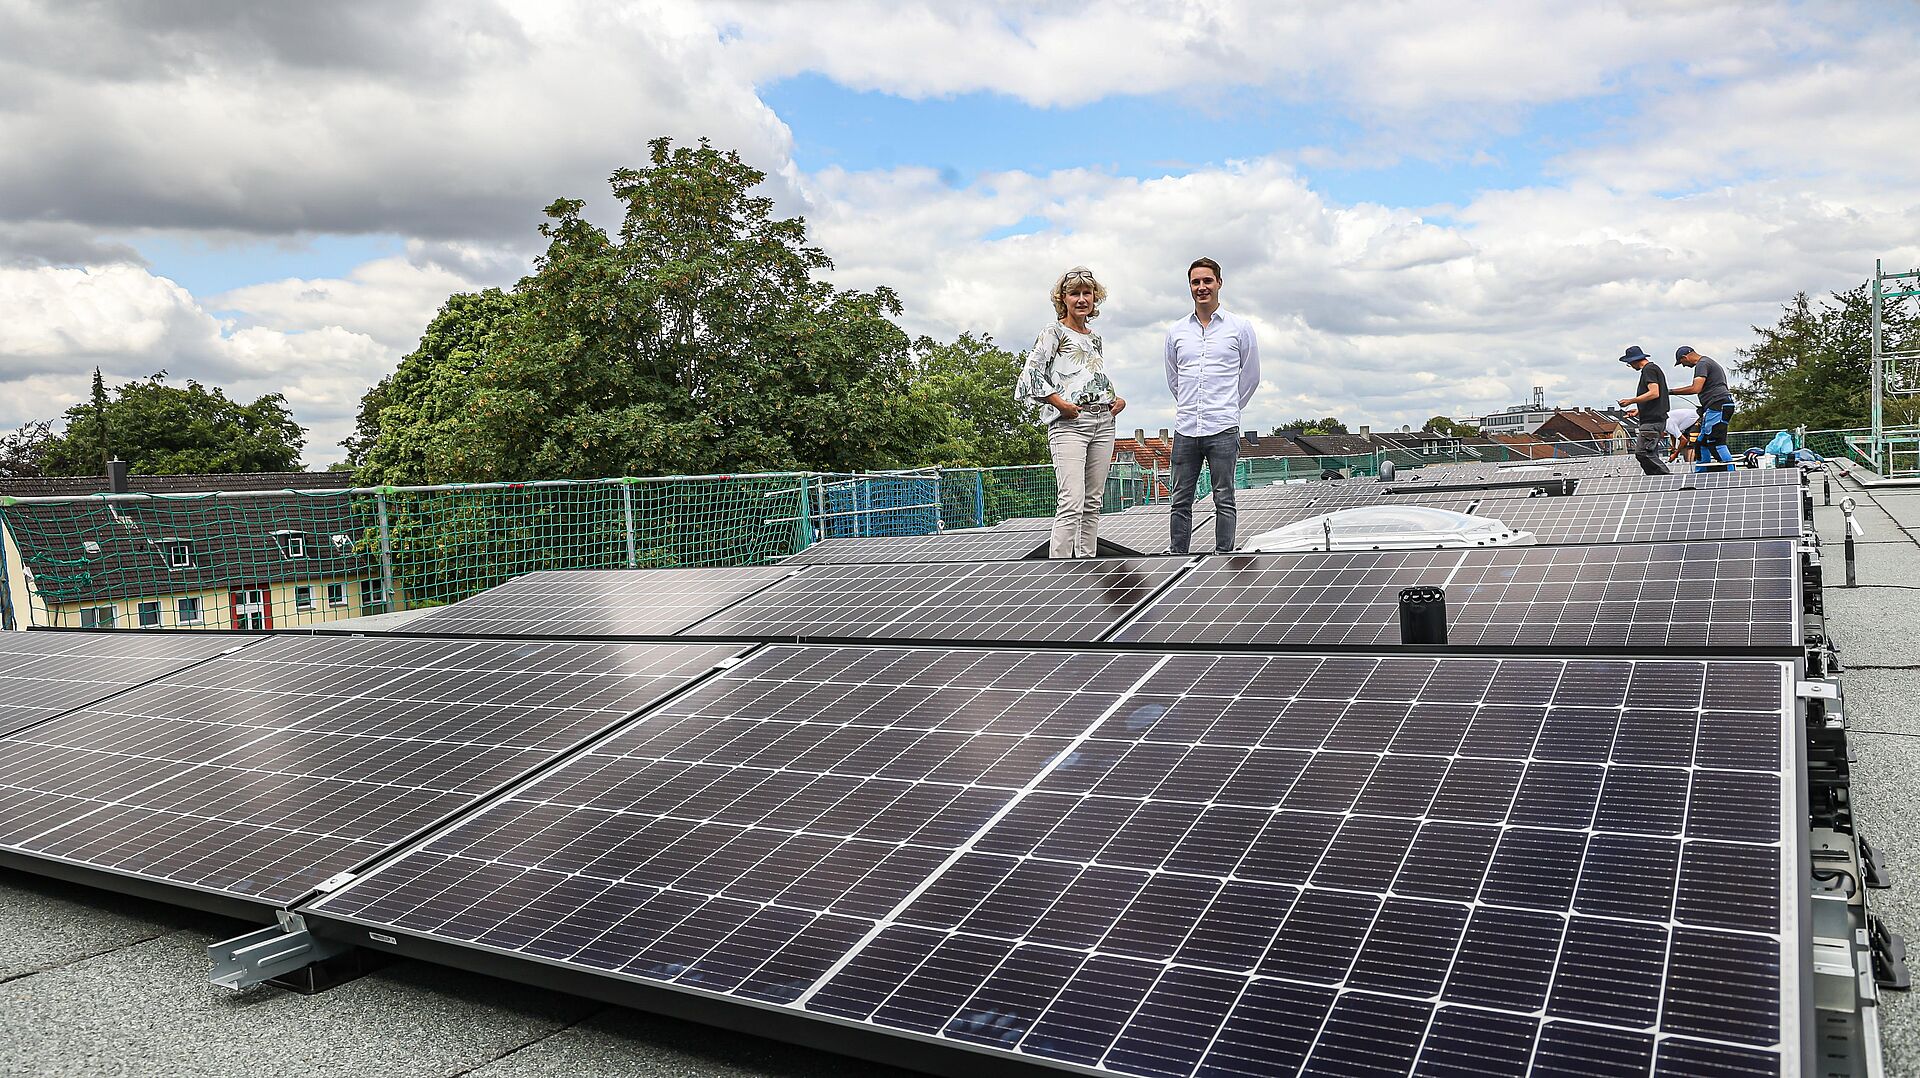 Photovoltaikanlage auf dem flachen Pultdach von drei Mehrfamilienhäusern produziert Solarstrom